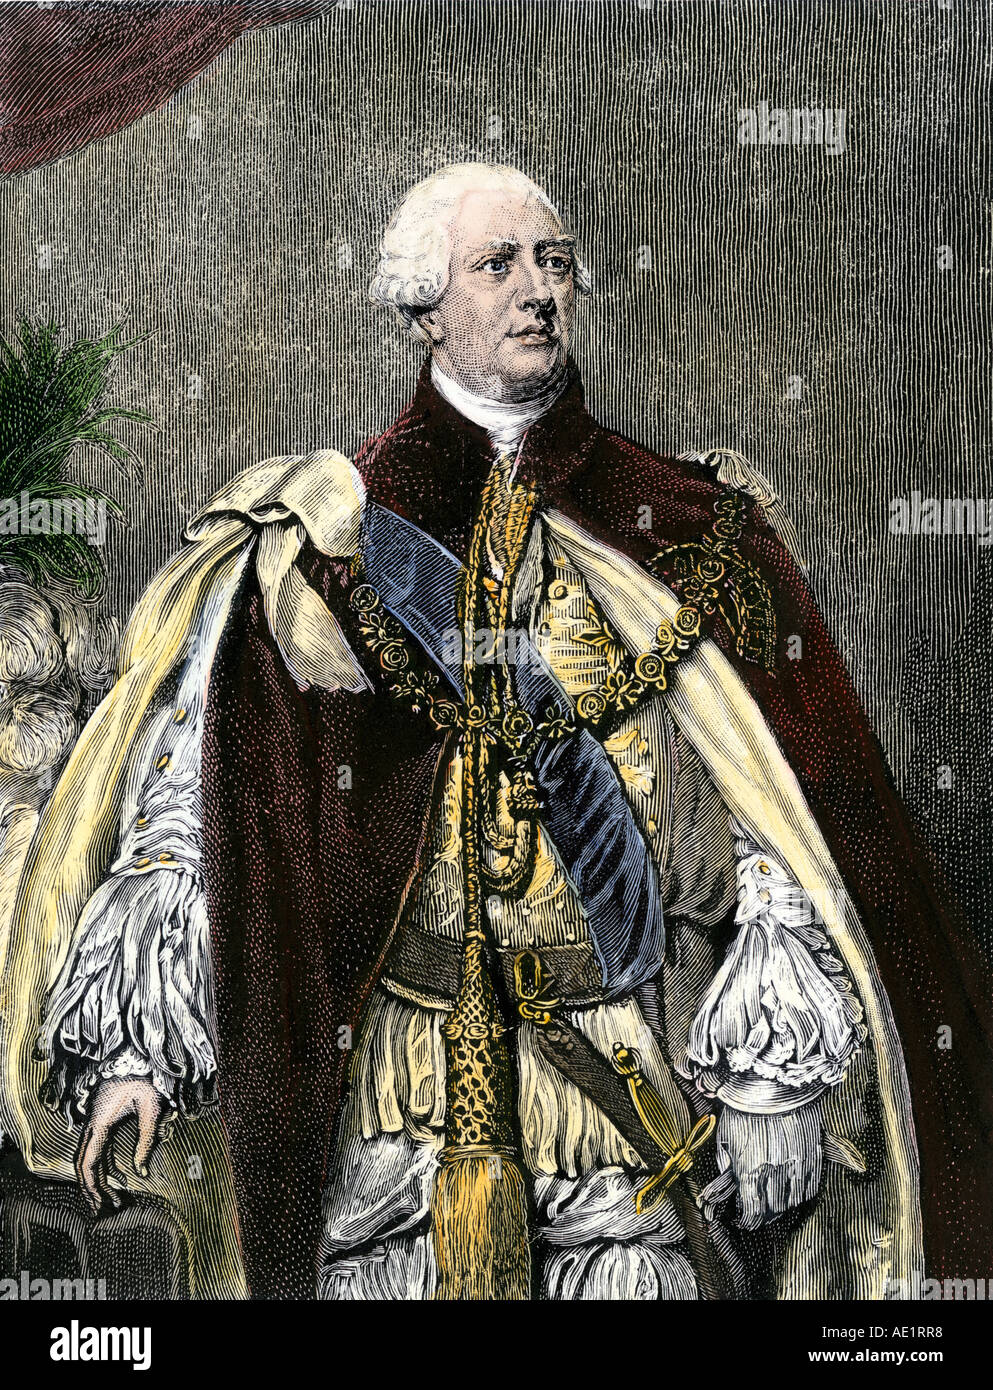 Le roi George III dans son vêtement. À la main, gravure sur bois Banque D'Images